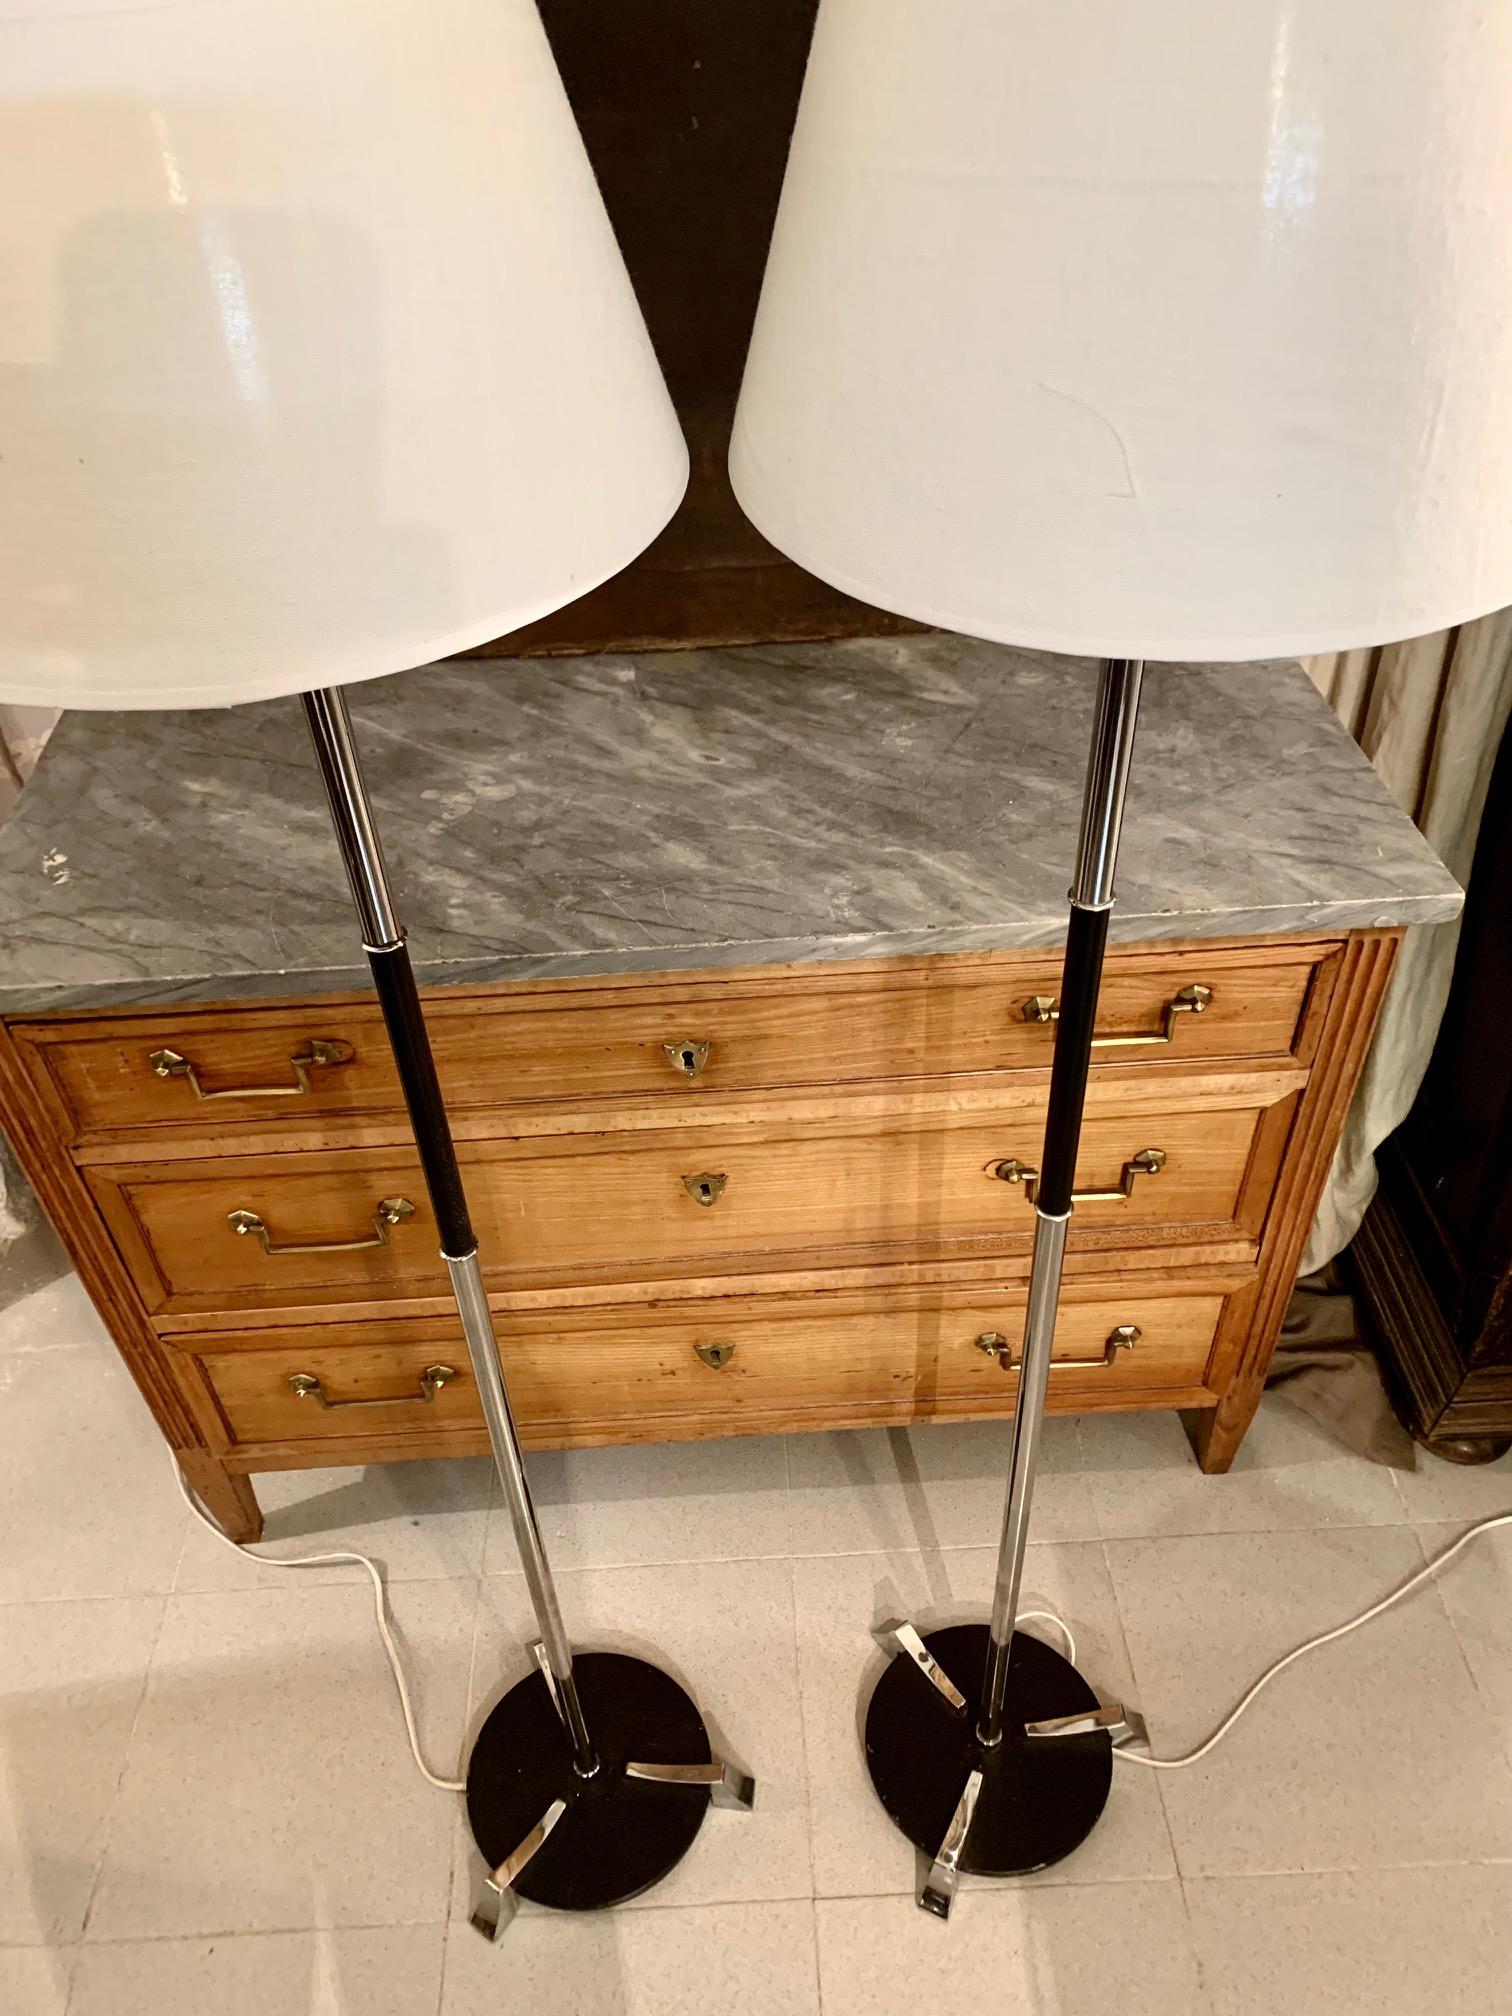 Paar spanische Stehlampen aus lackiertem und verchromtem Metall aus den 70er Jahren, der Sockel der Lampe ist mit drei verchromten Füßen auf einem schwarz lackierten runden Sockel, Lampenschirme aus weißem satiniertem Stoff